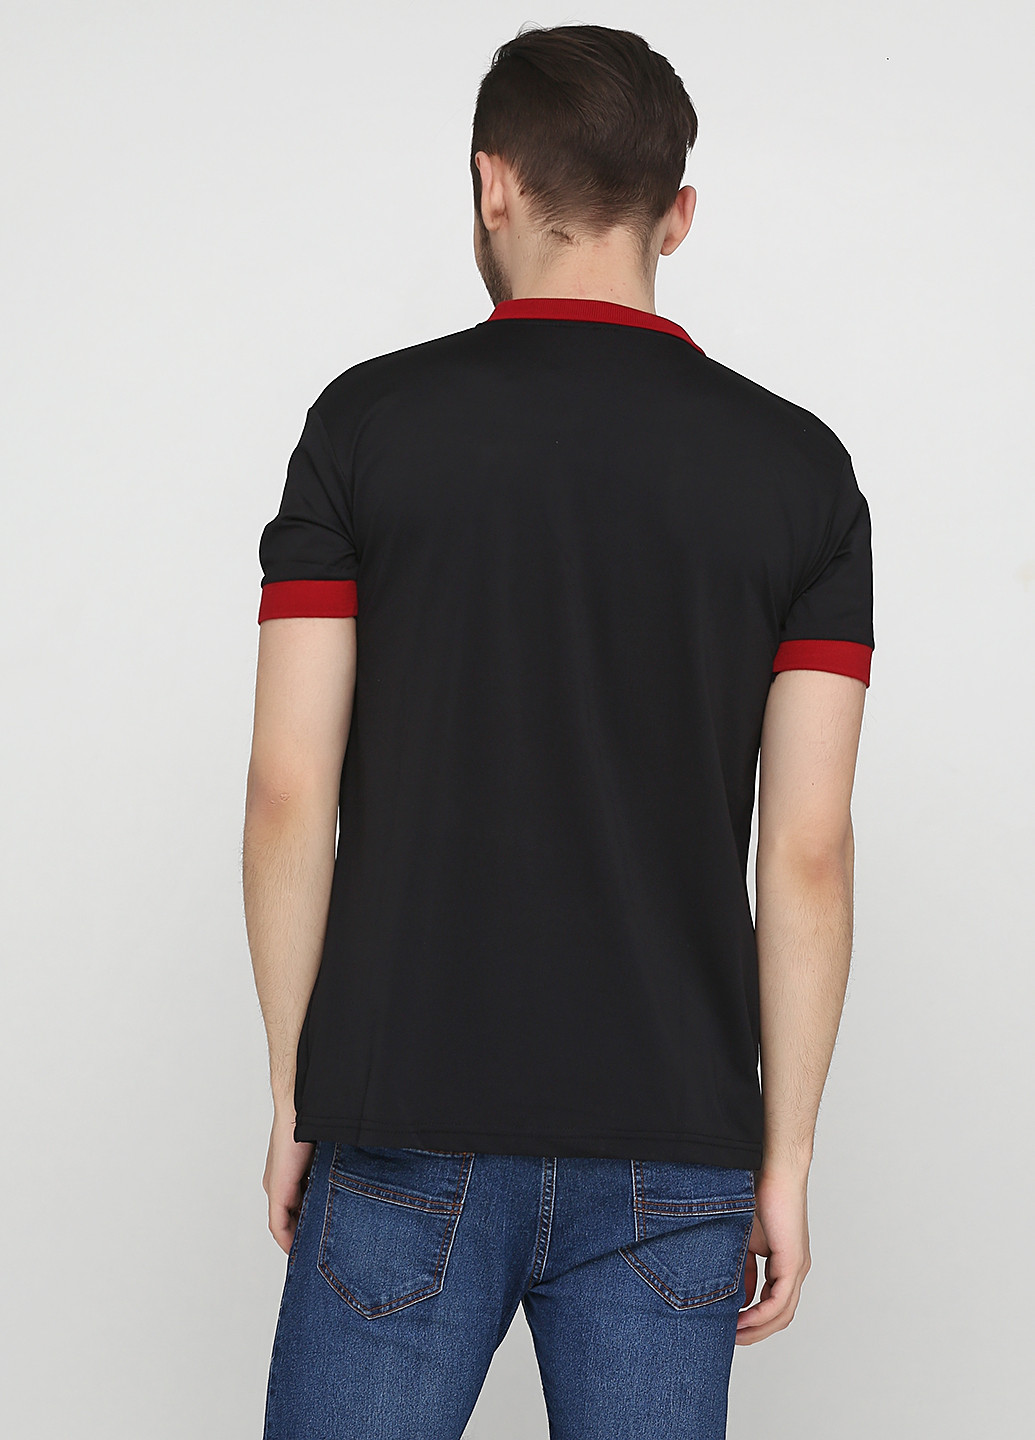 Черная футболка-поло для мужчин Chiarotex с логотипом